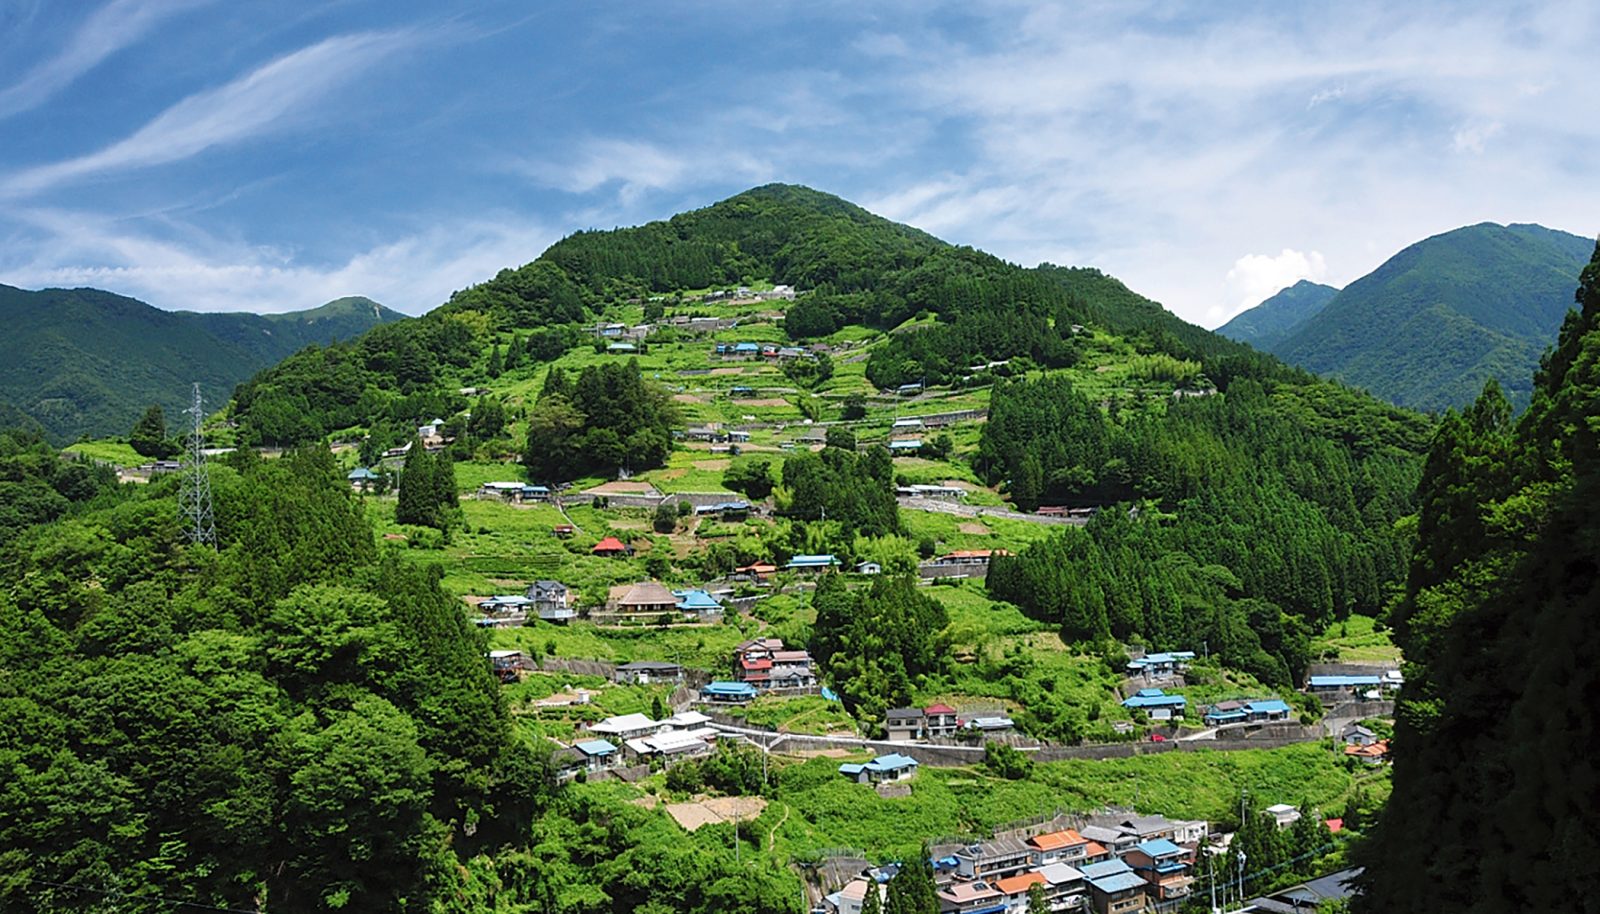  деревни и сельские районы Японии Сикоку